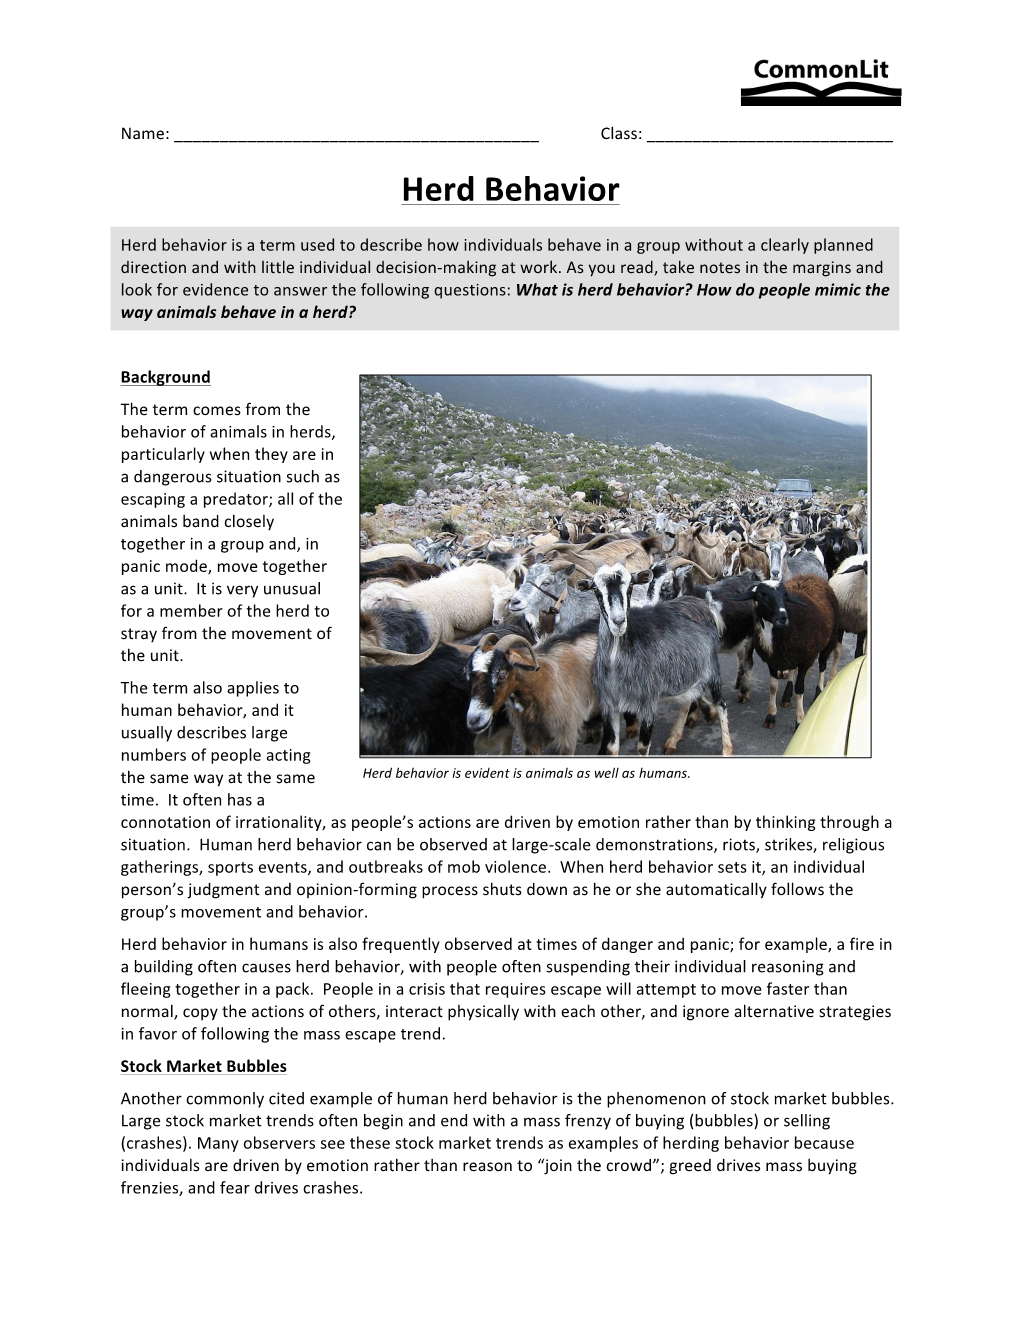 Herd Behavior